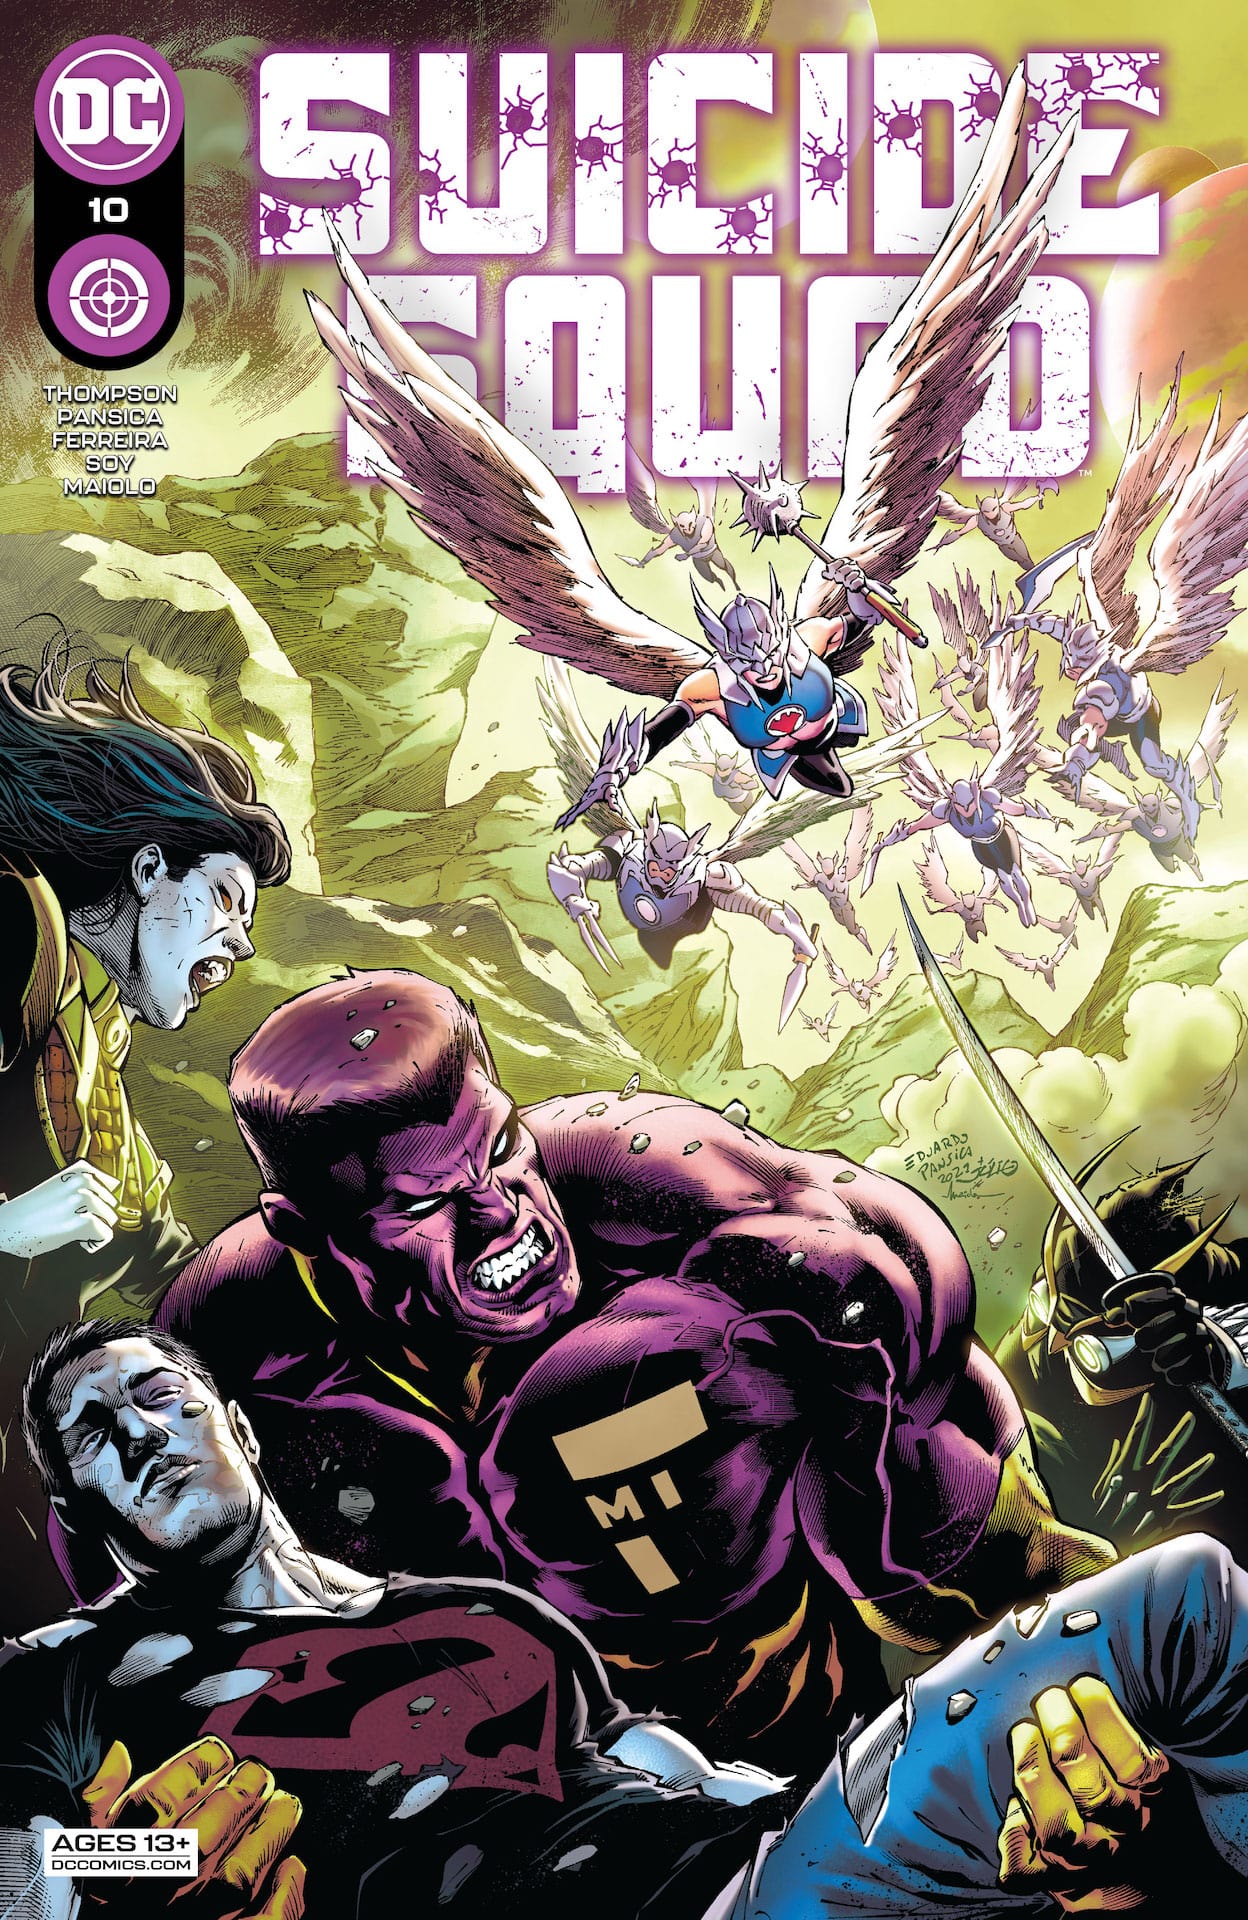 DC Preview: Suicide Squad #10